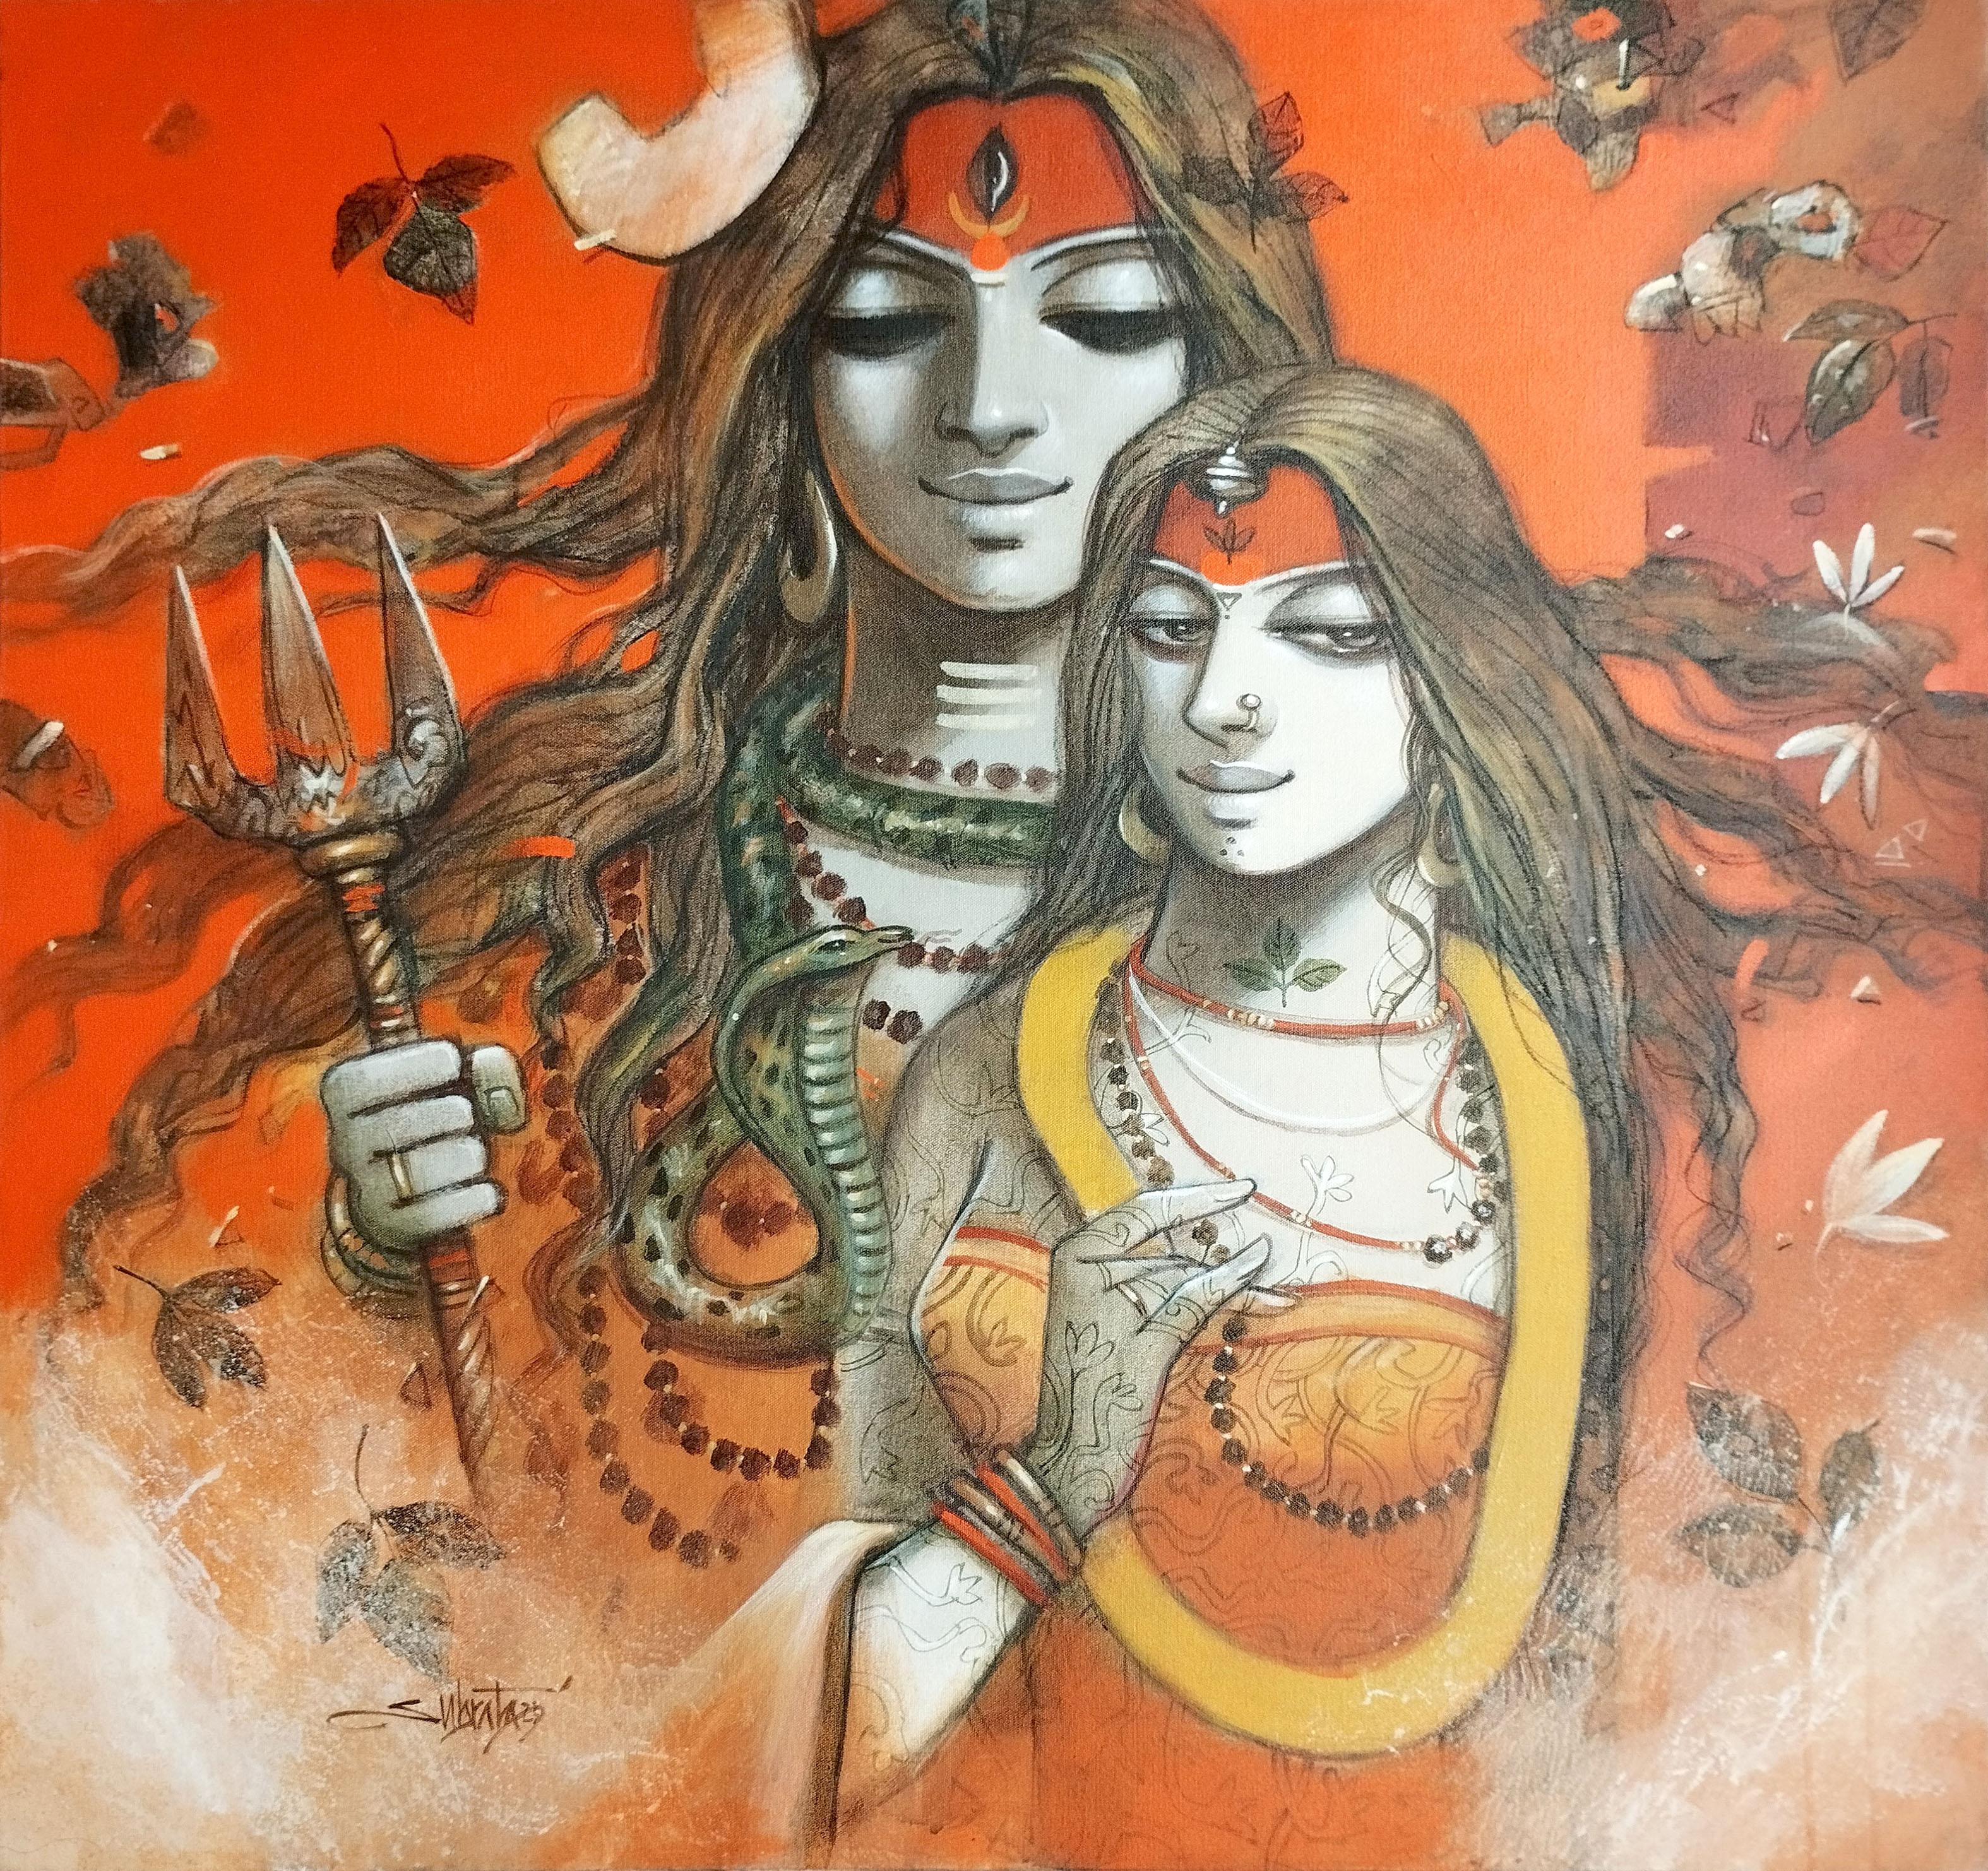 Shiva Parvati, acrylique sur toile par Contemporary, rouge, jaune, blanc, en stock